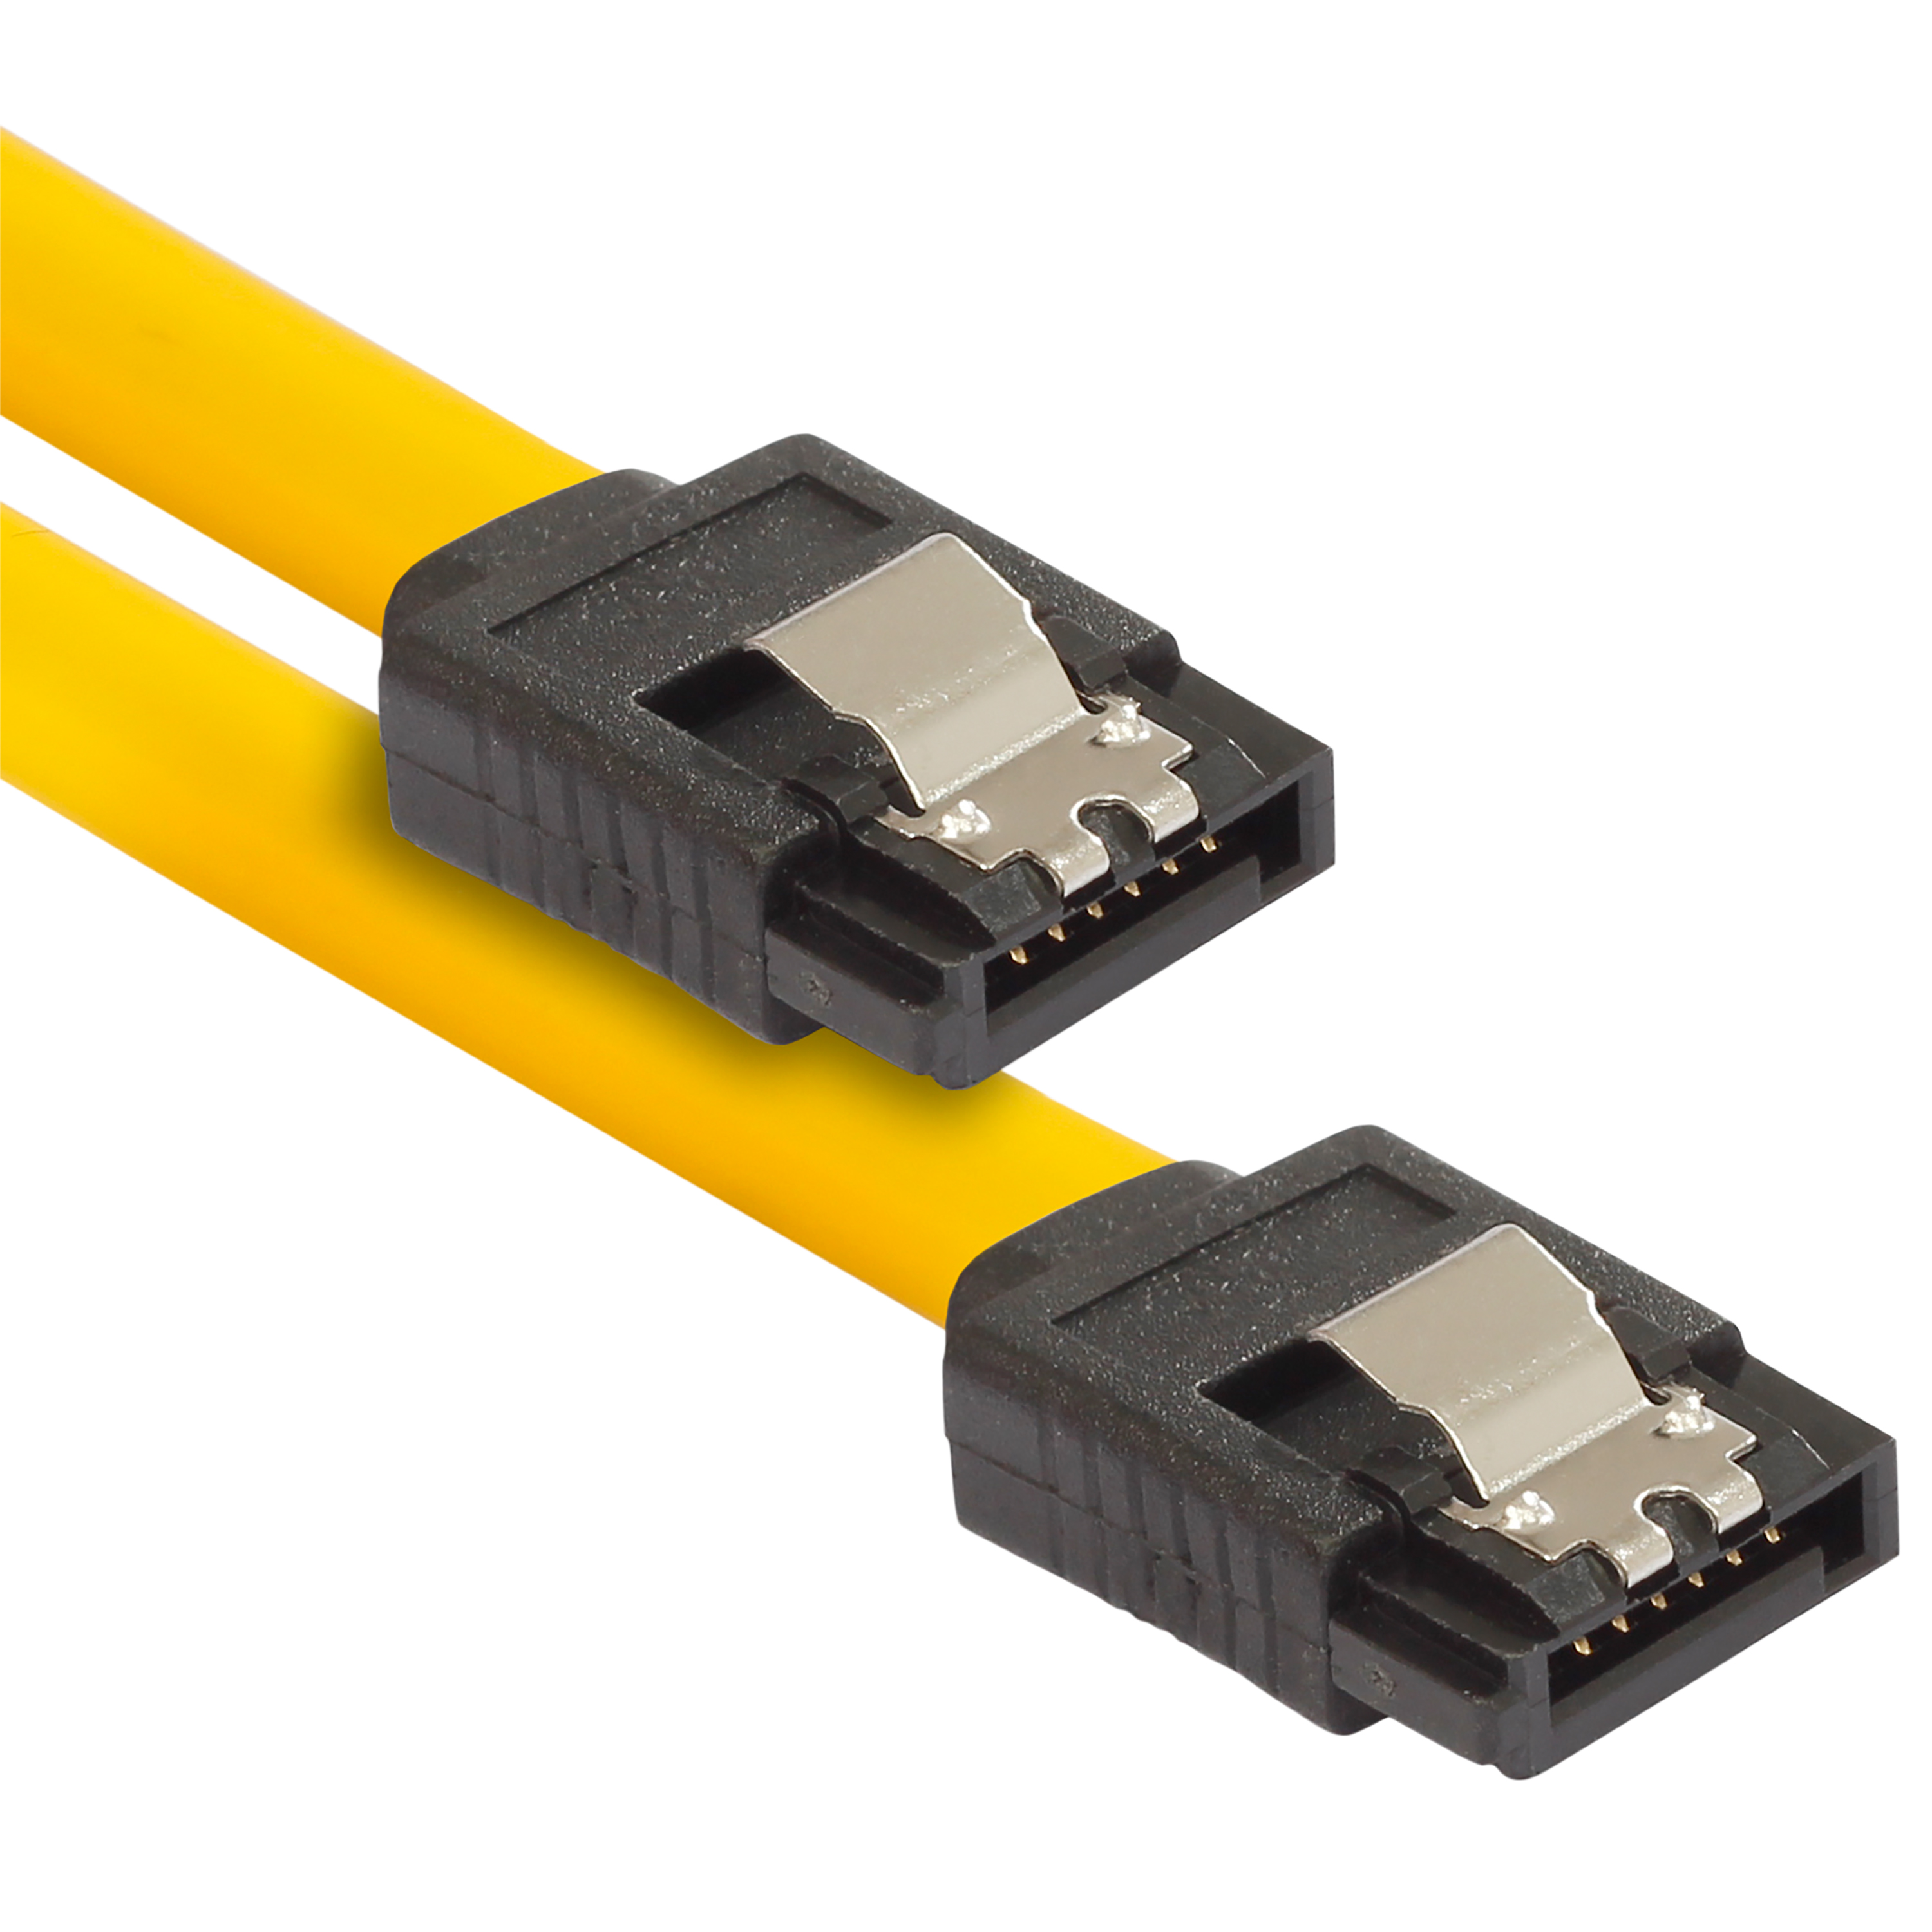 Sata 3 Kabel 0,5 m für SSD/HDD, gerade Stecker, gelb